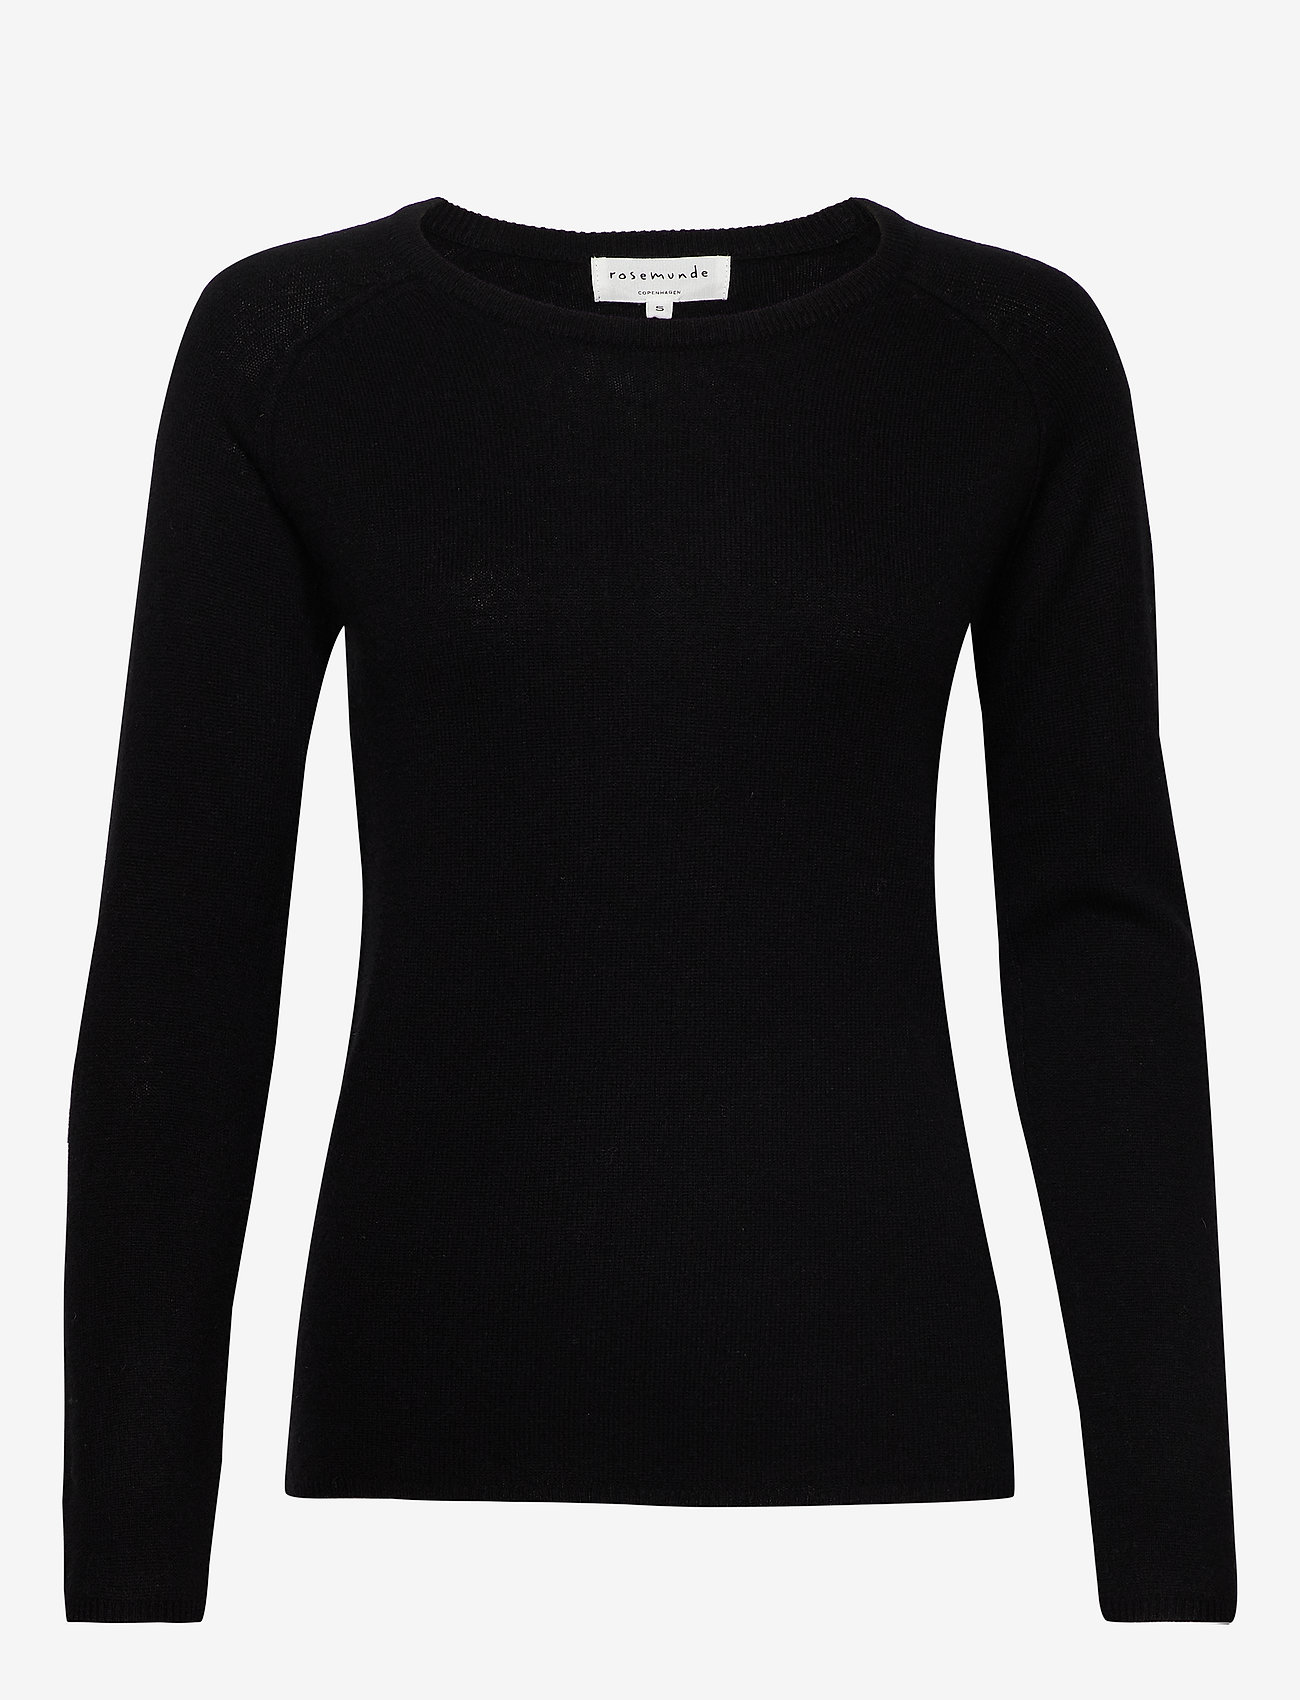 Rosemunde - Wool & cashmere pullover - jumpers - black - 0